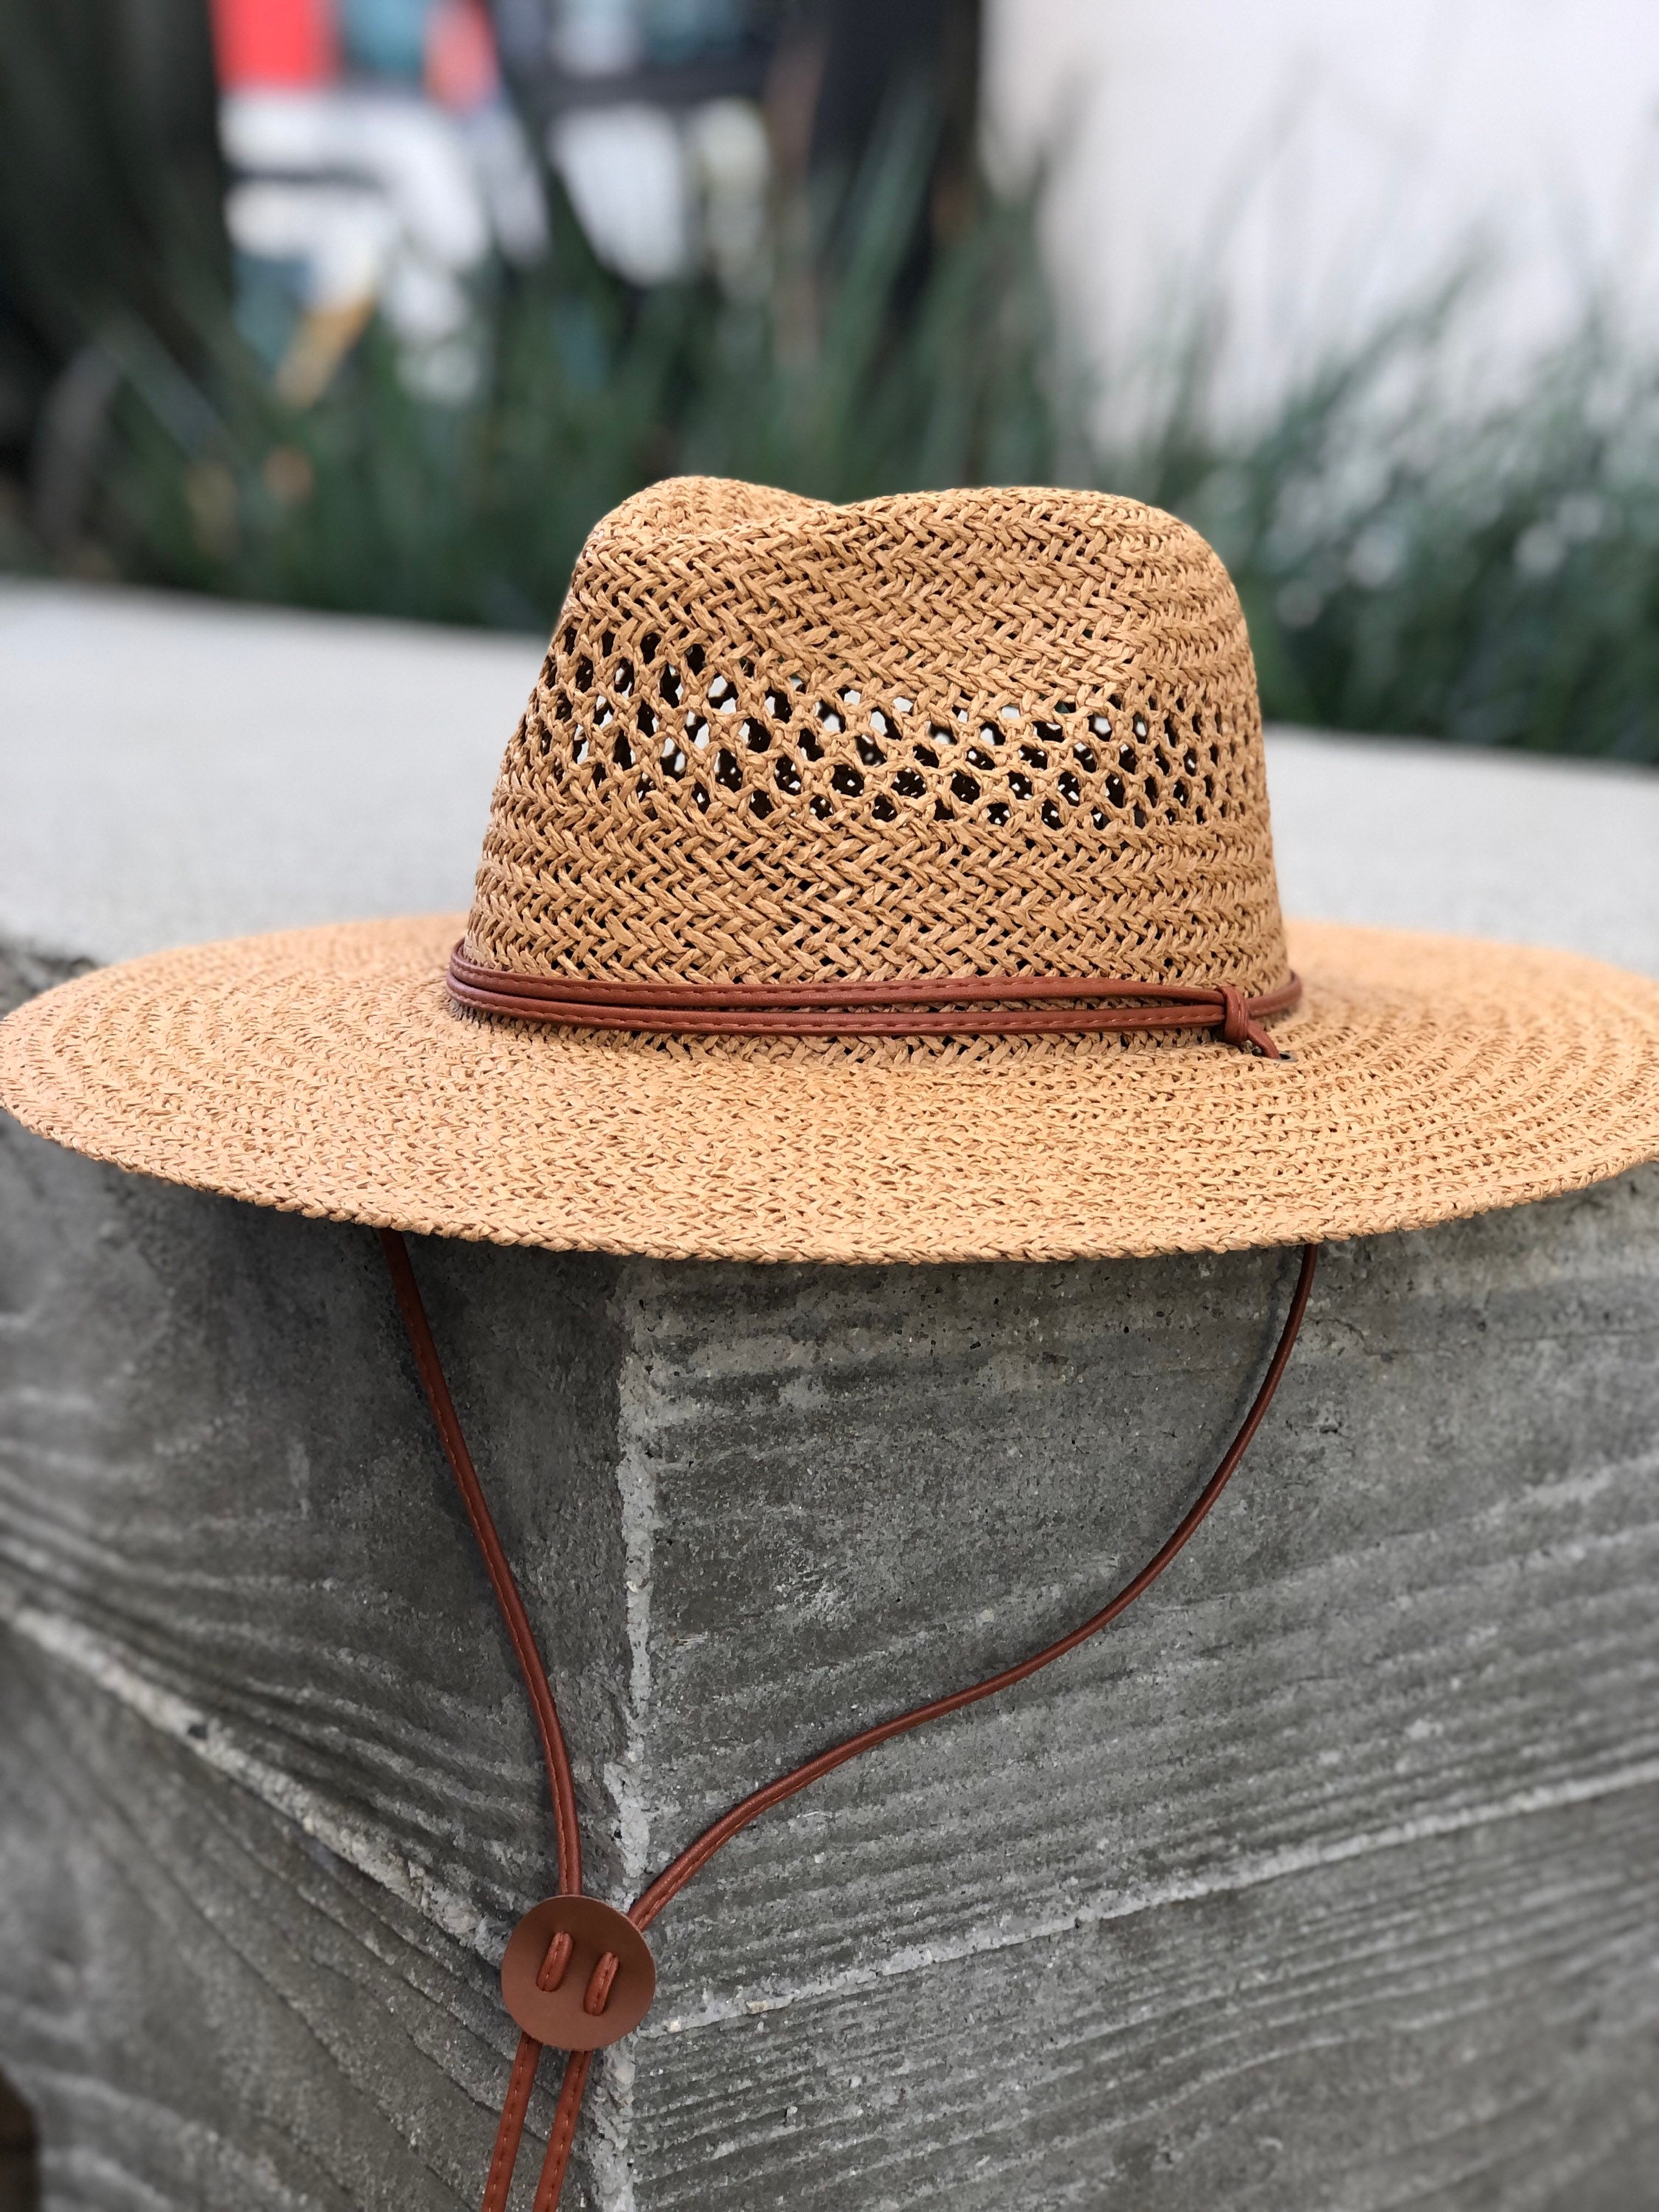 Straw Hat With Chin Strap Summer Fedora Wide Brim Sun Hat - Etsy